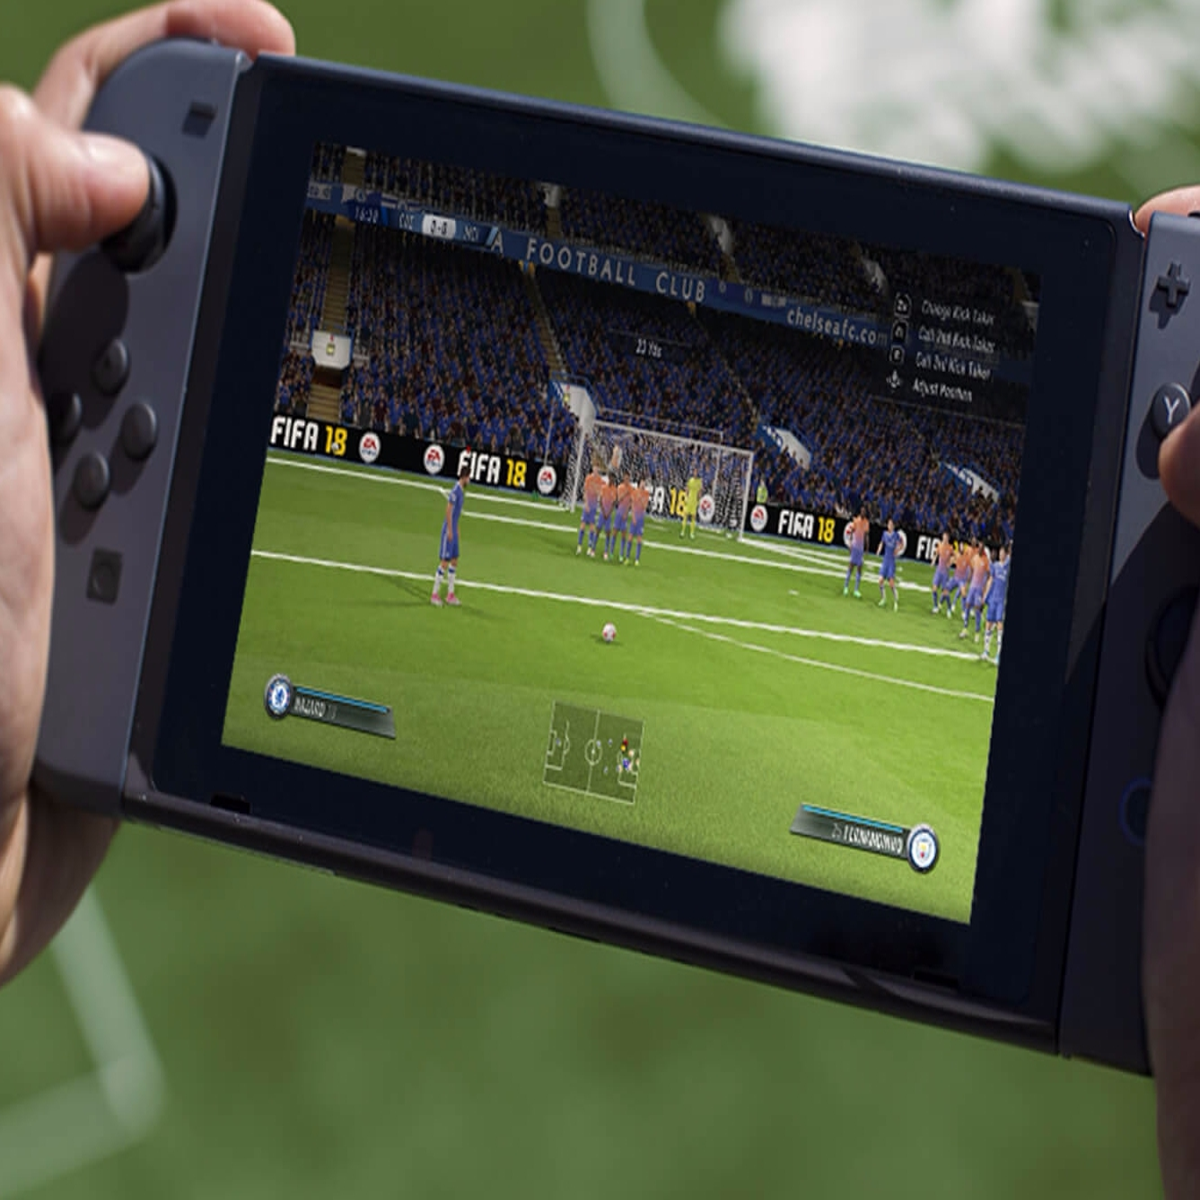 JOGO FIFA 18 - PS4 (USADO)